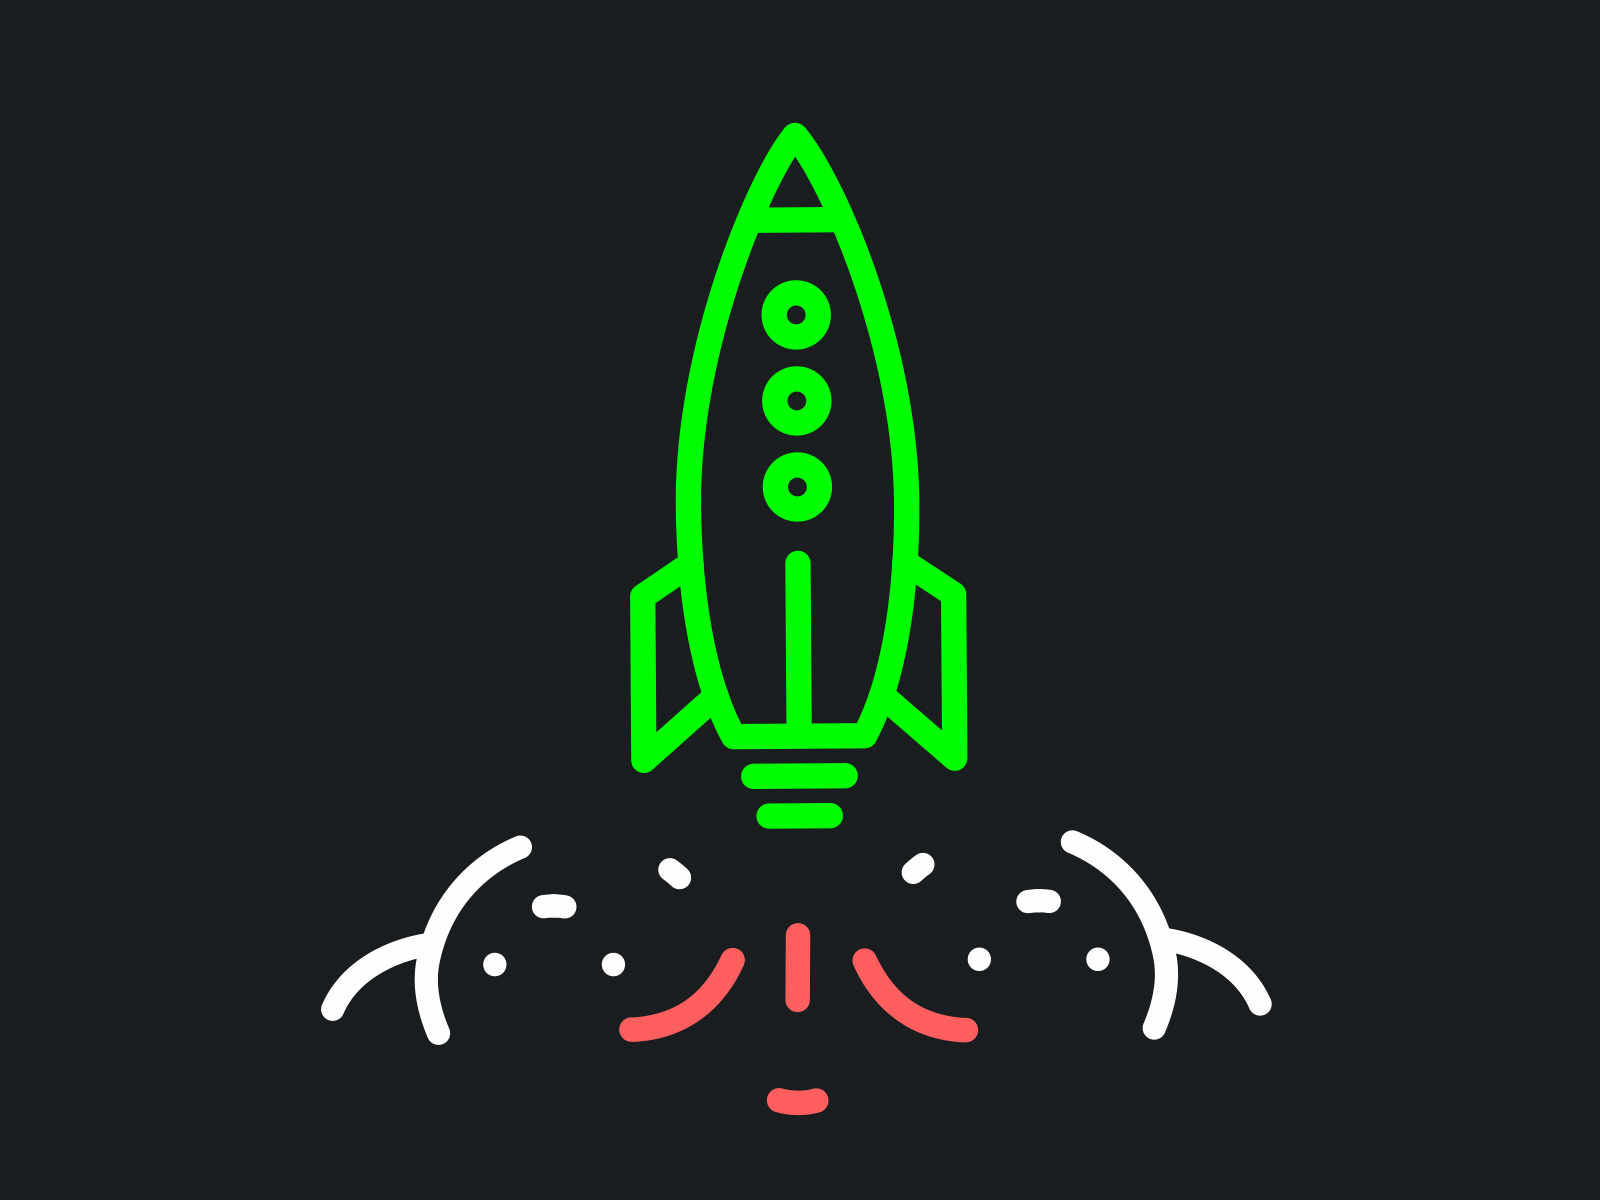 Rocket launch - Lottie Animation